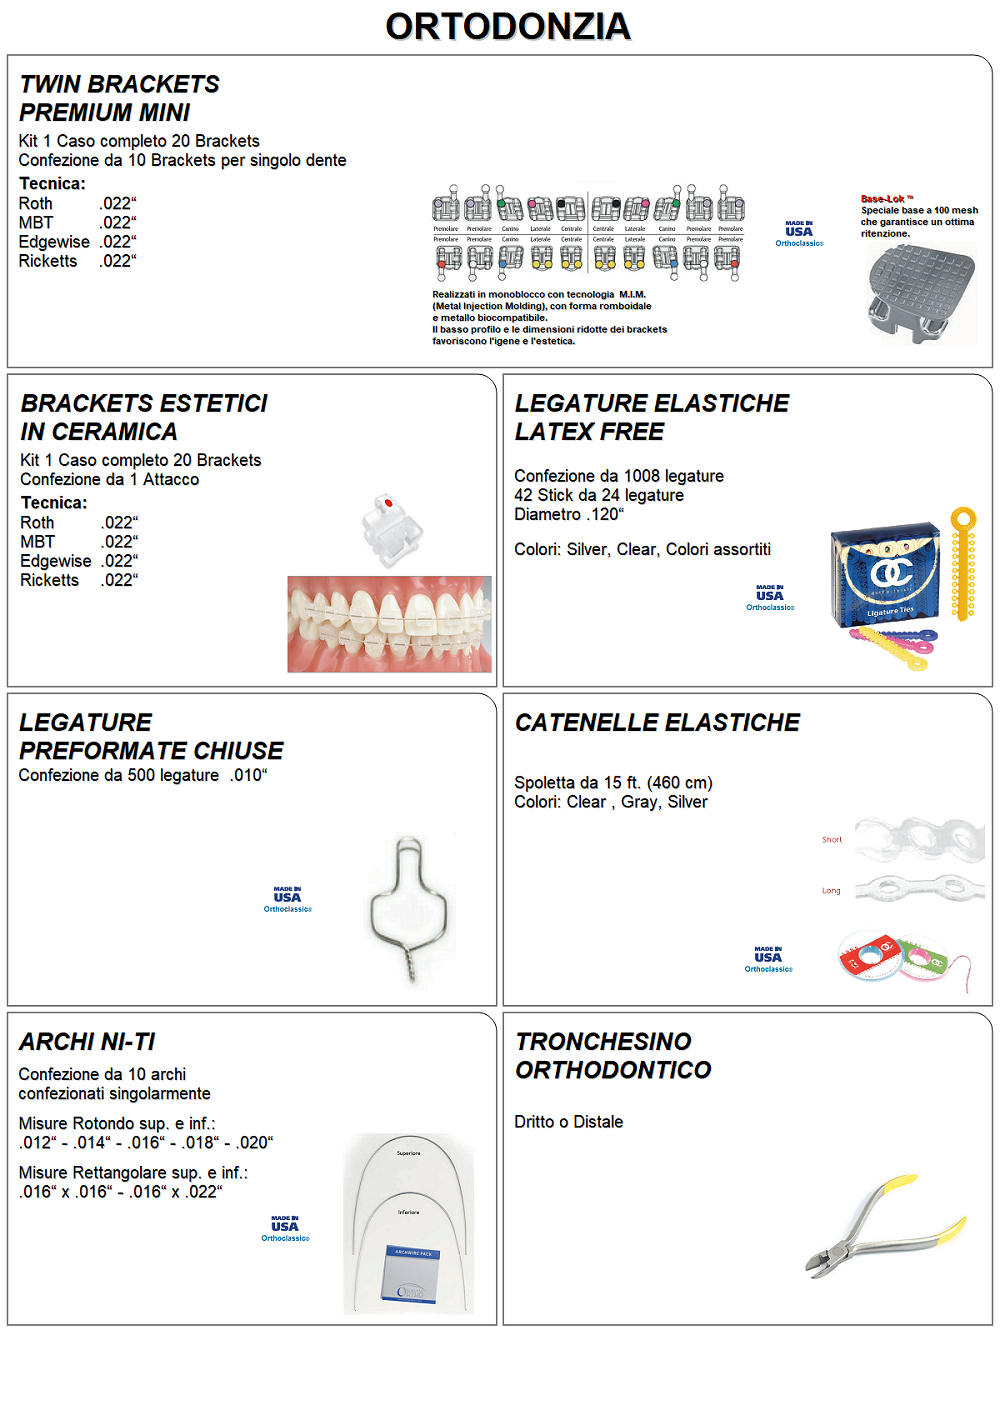 ortodonzia - prodotti ortodontici